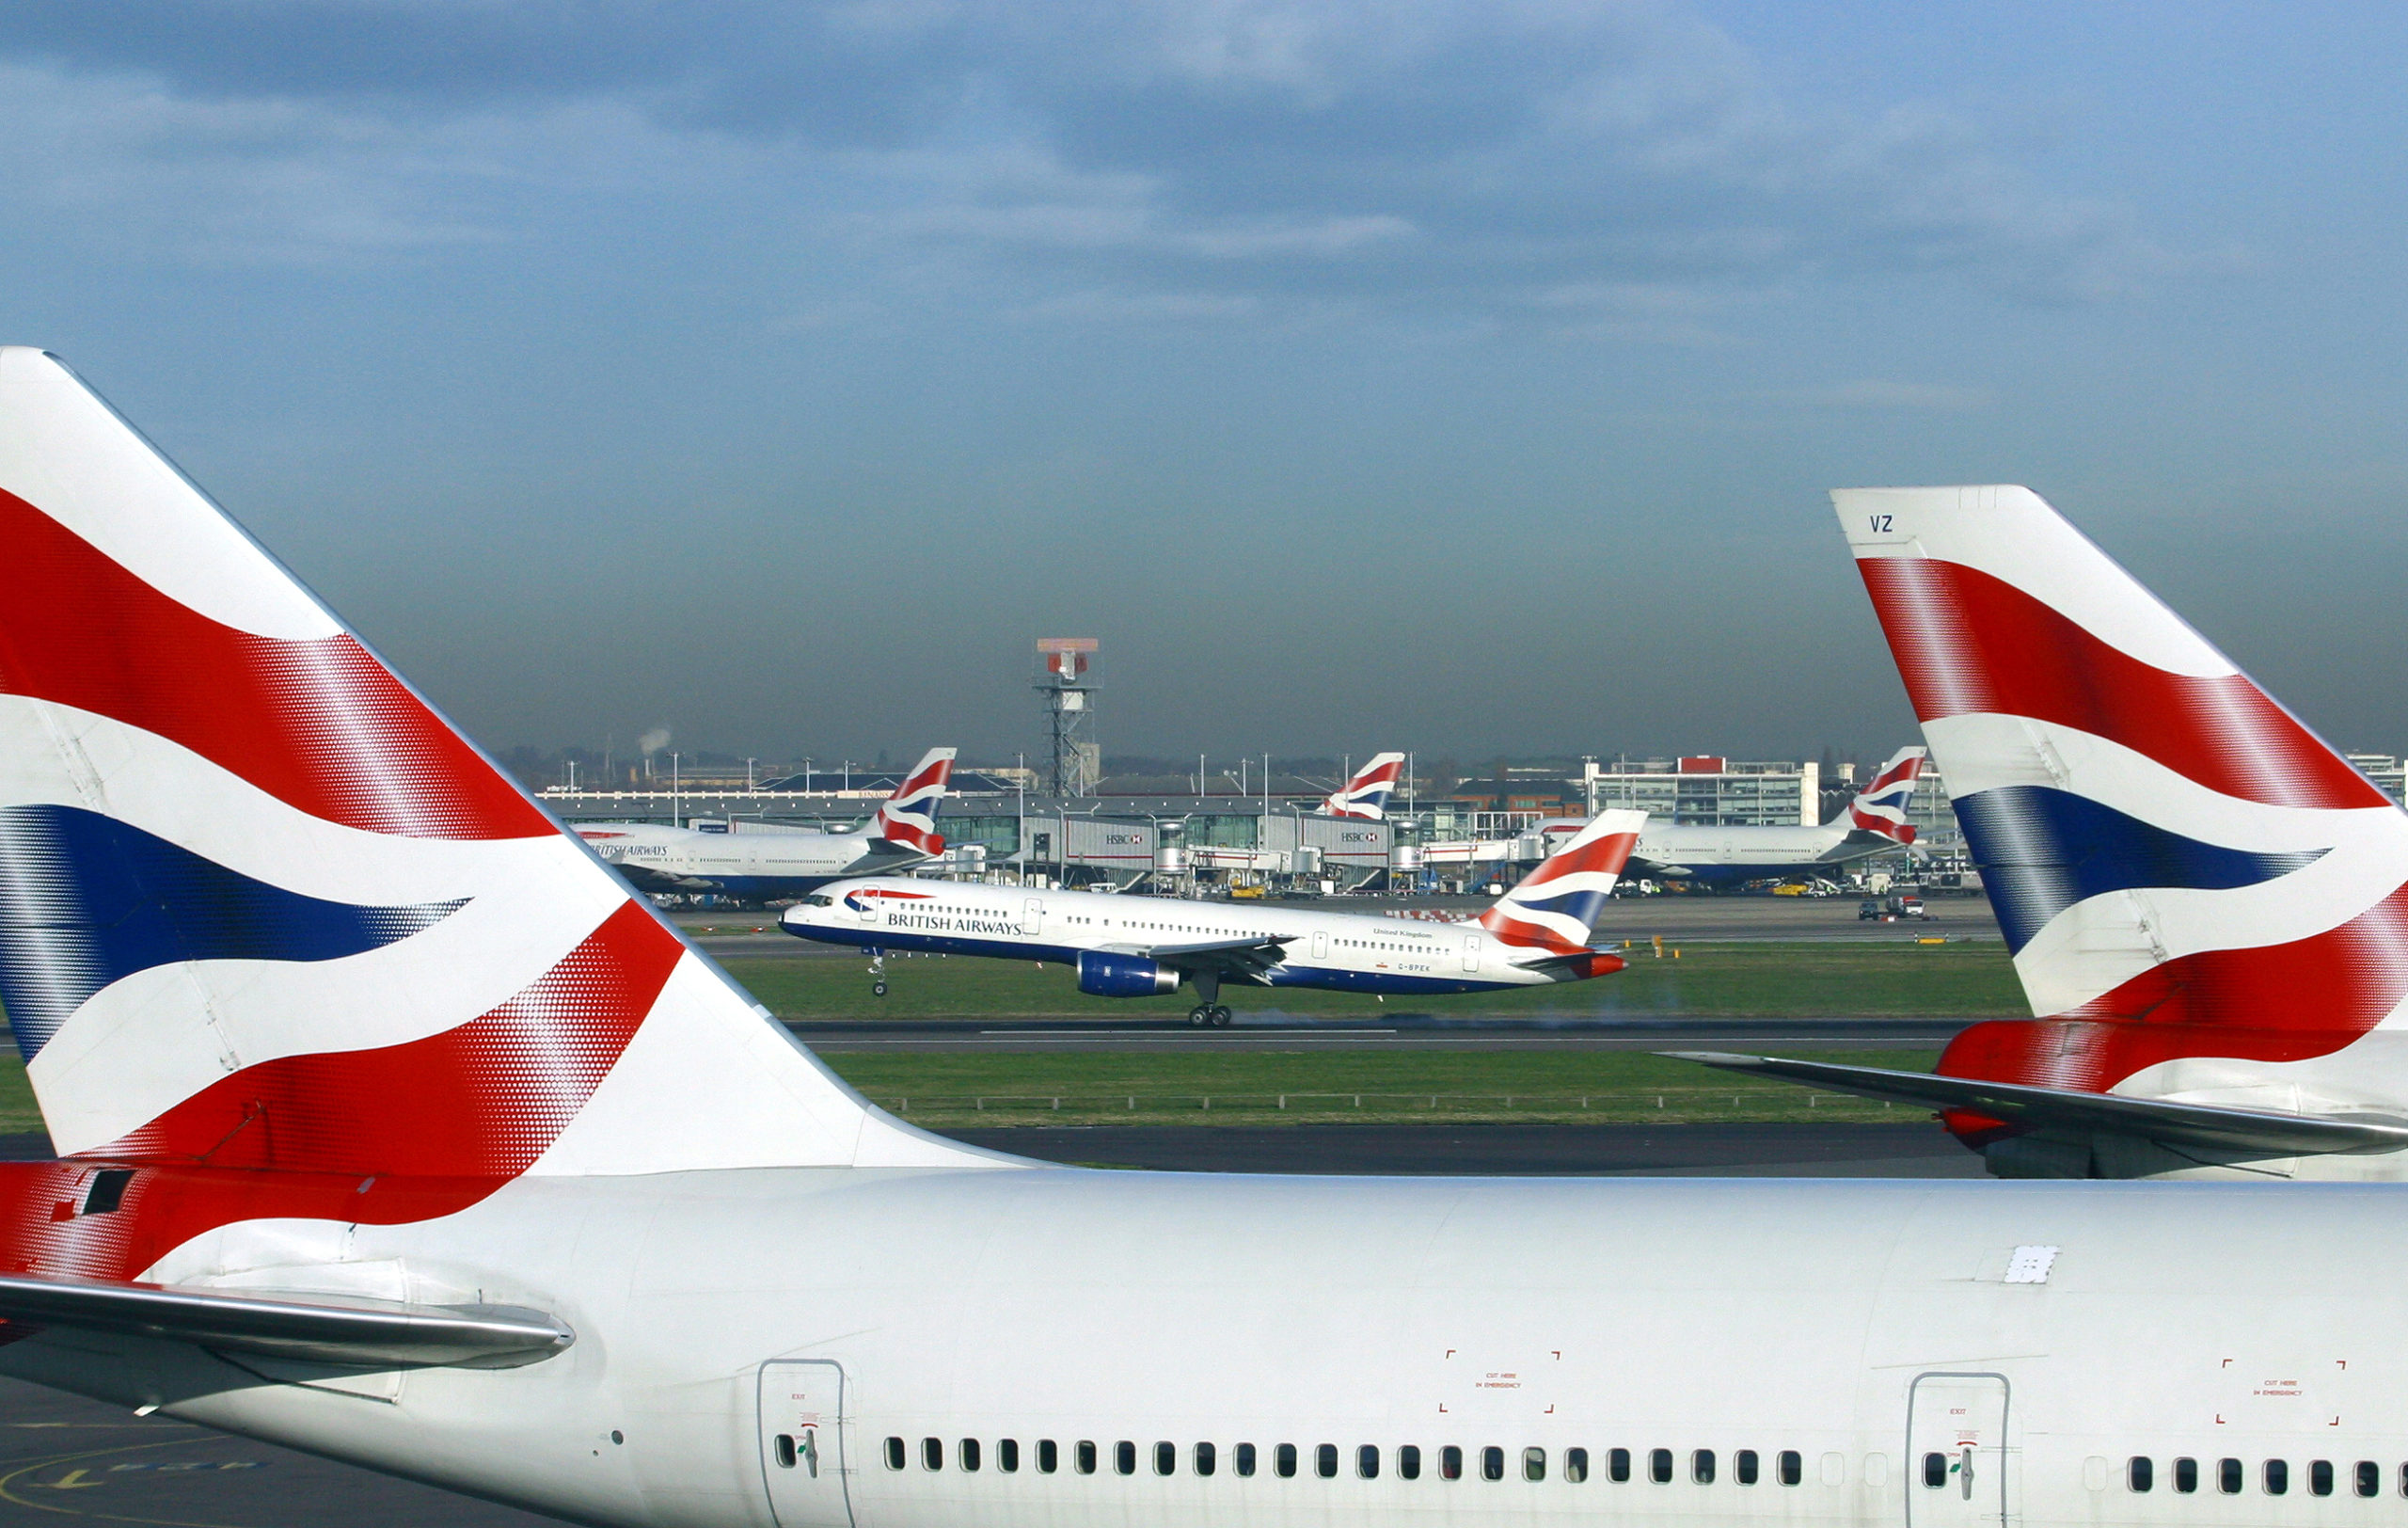 Two British Airways aircraft, with British Airways plane taking off in background.